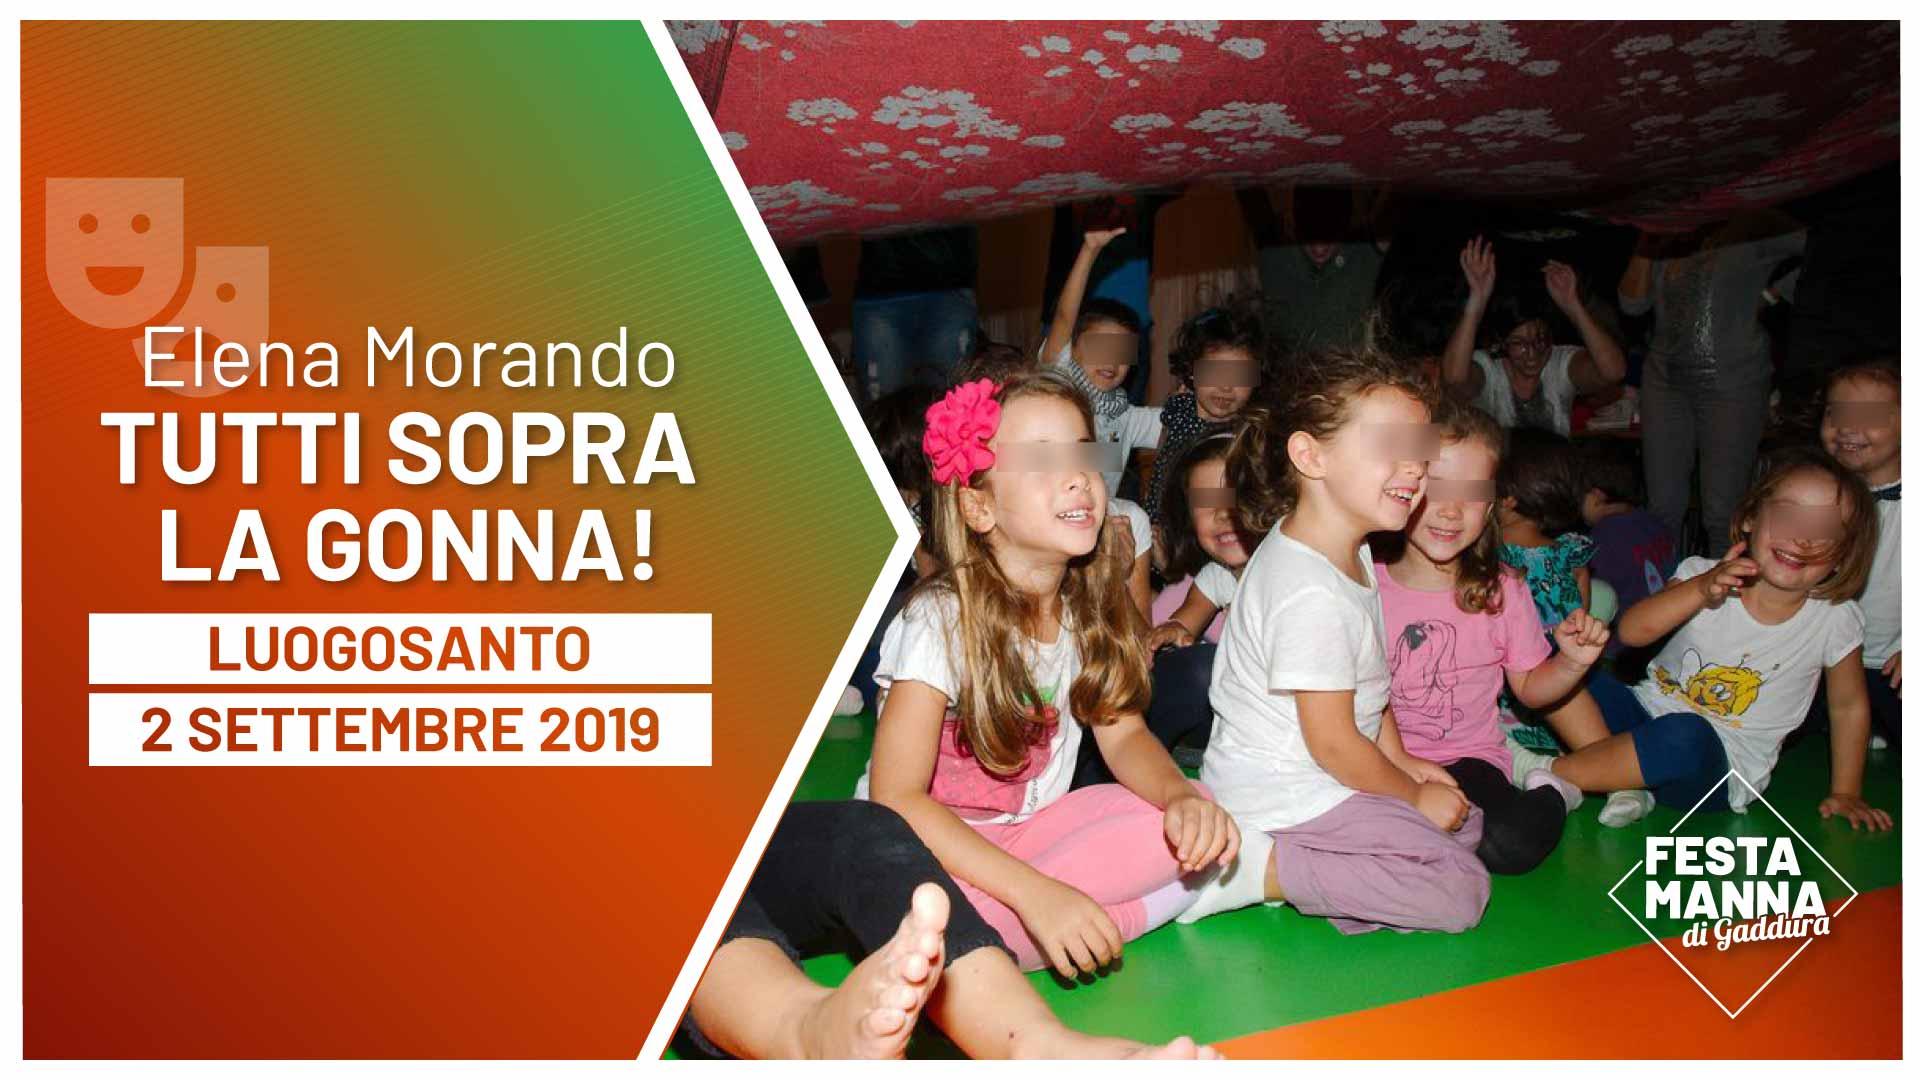 “Tutti sopra la gonna!”, letture per bambine/i a cura di Elena Morando | Festa Manna di Gaddura 2019